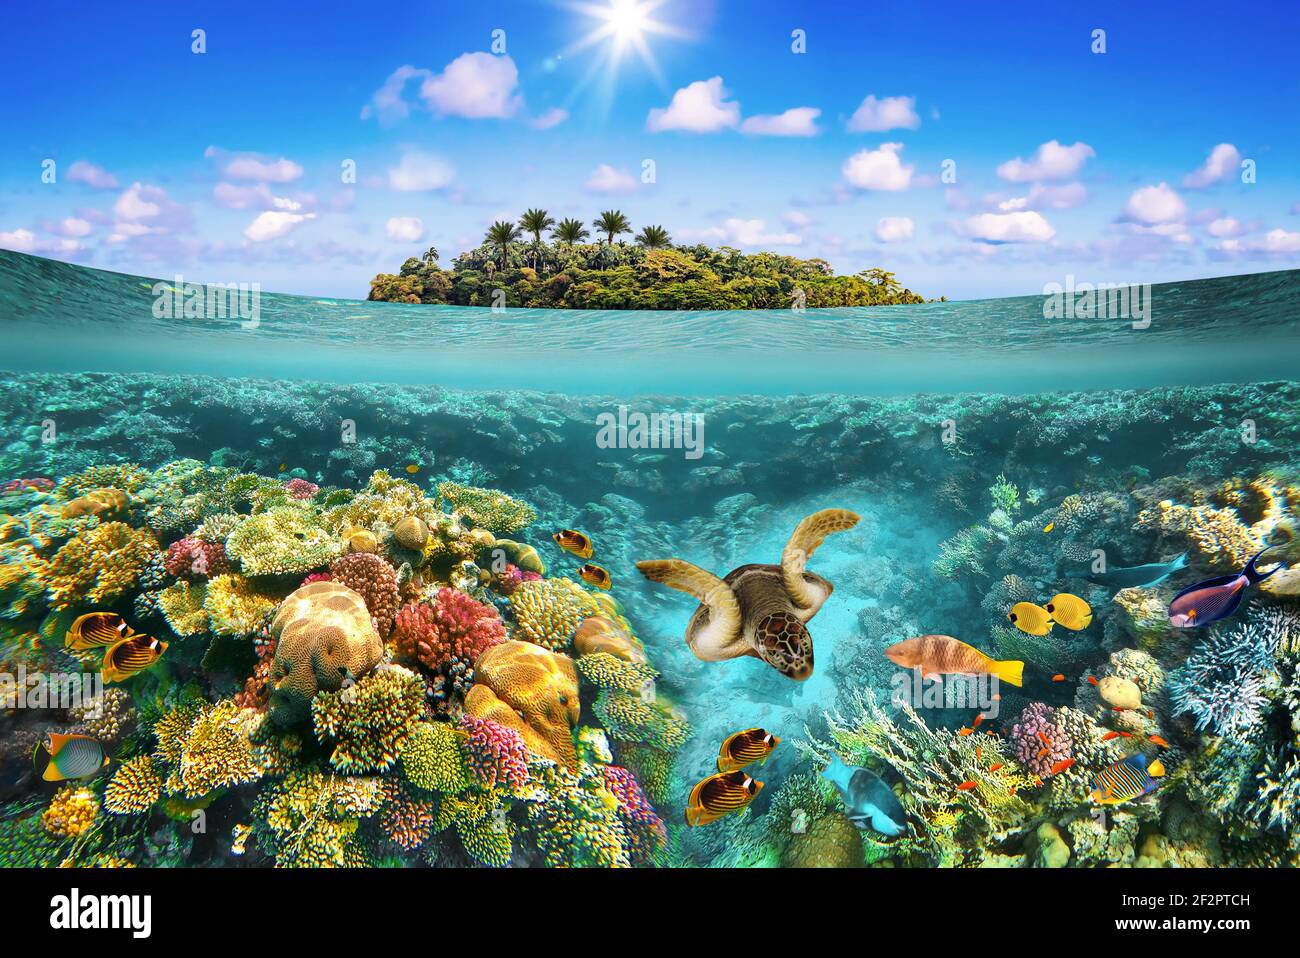 Collage sur une plage tropicale avec un beau monde sous-marin par une journée ensoleillée. Magnifique île paradisiaque et avec des poissons de corail au récif. Banque D'Images